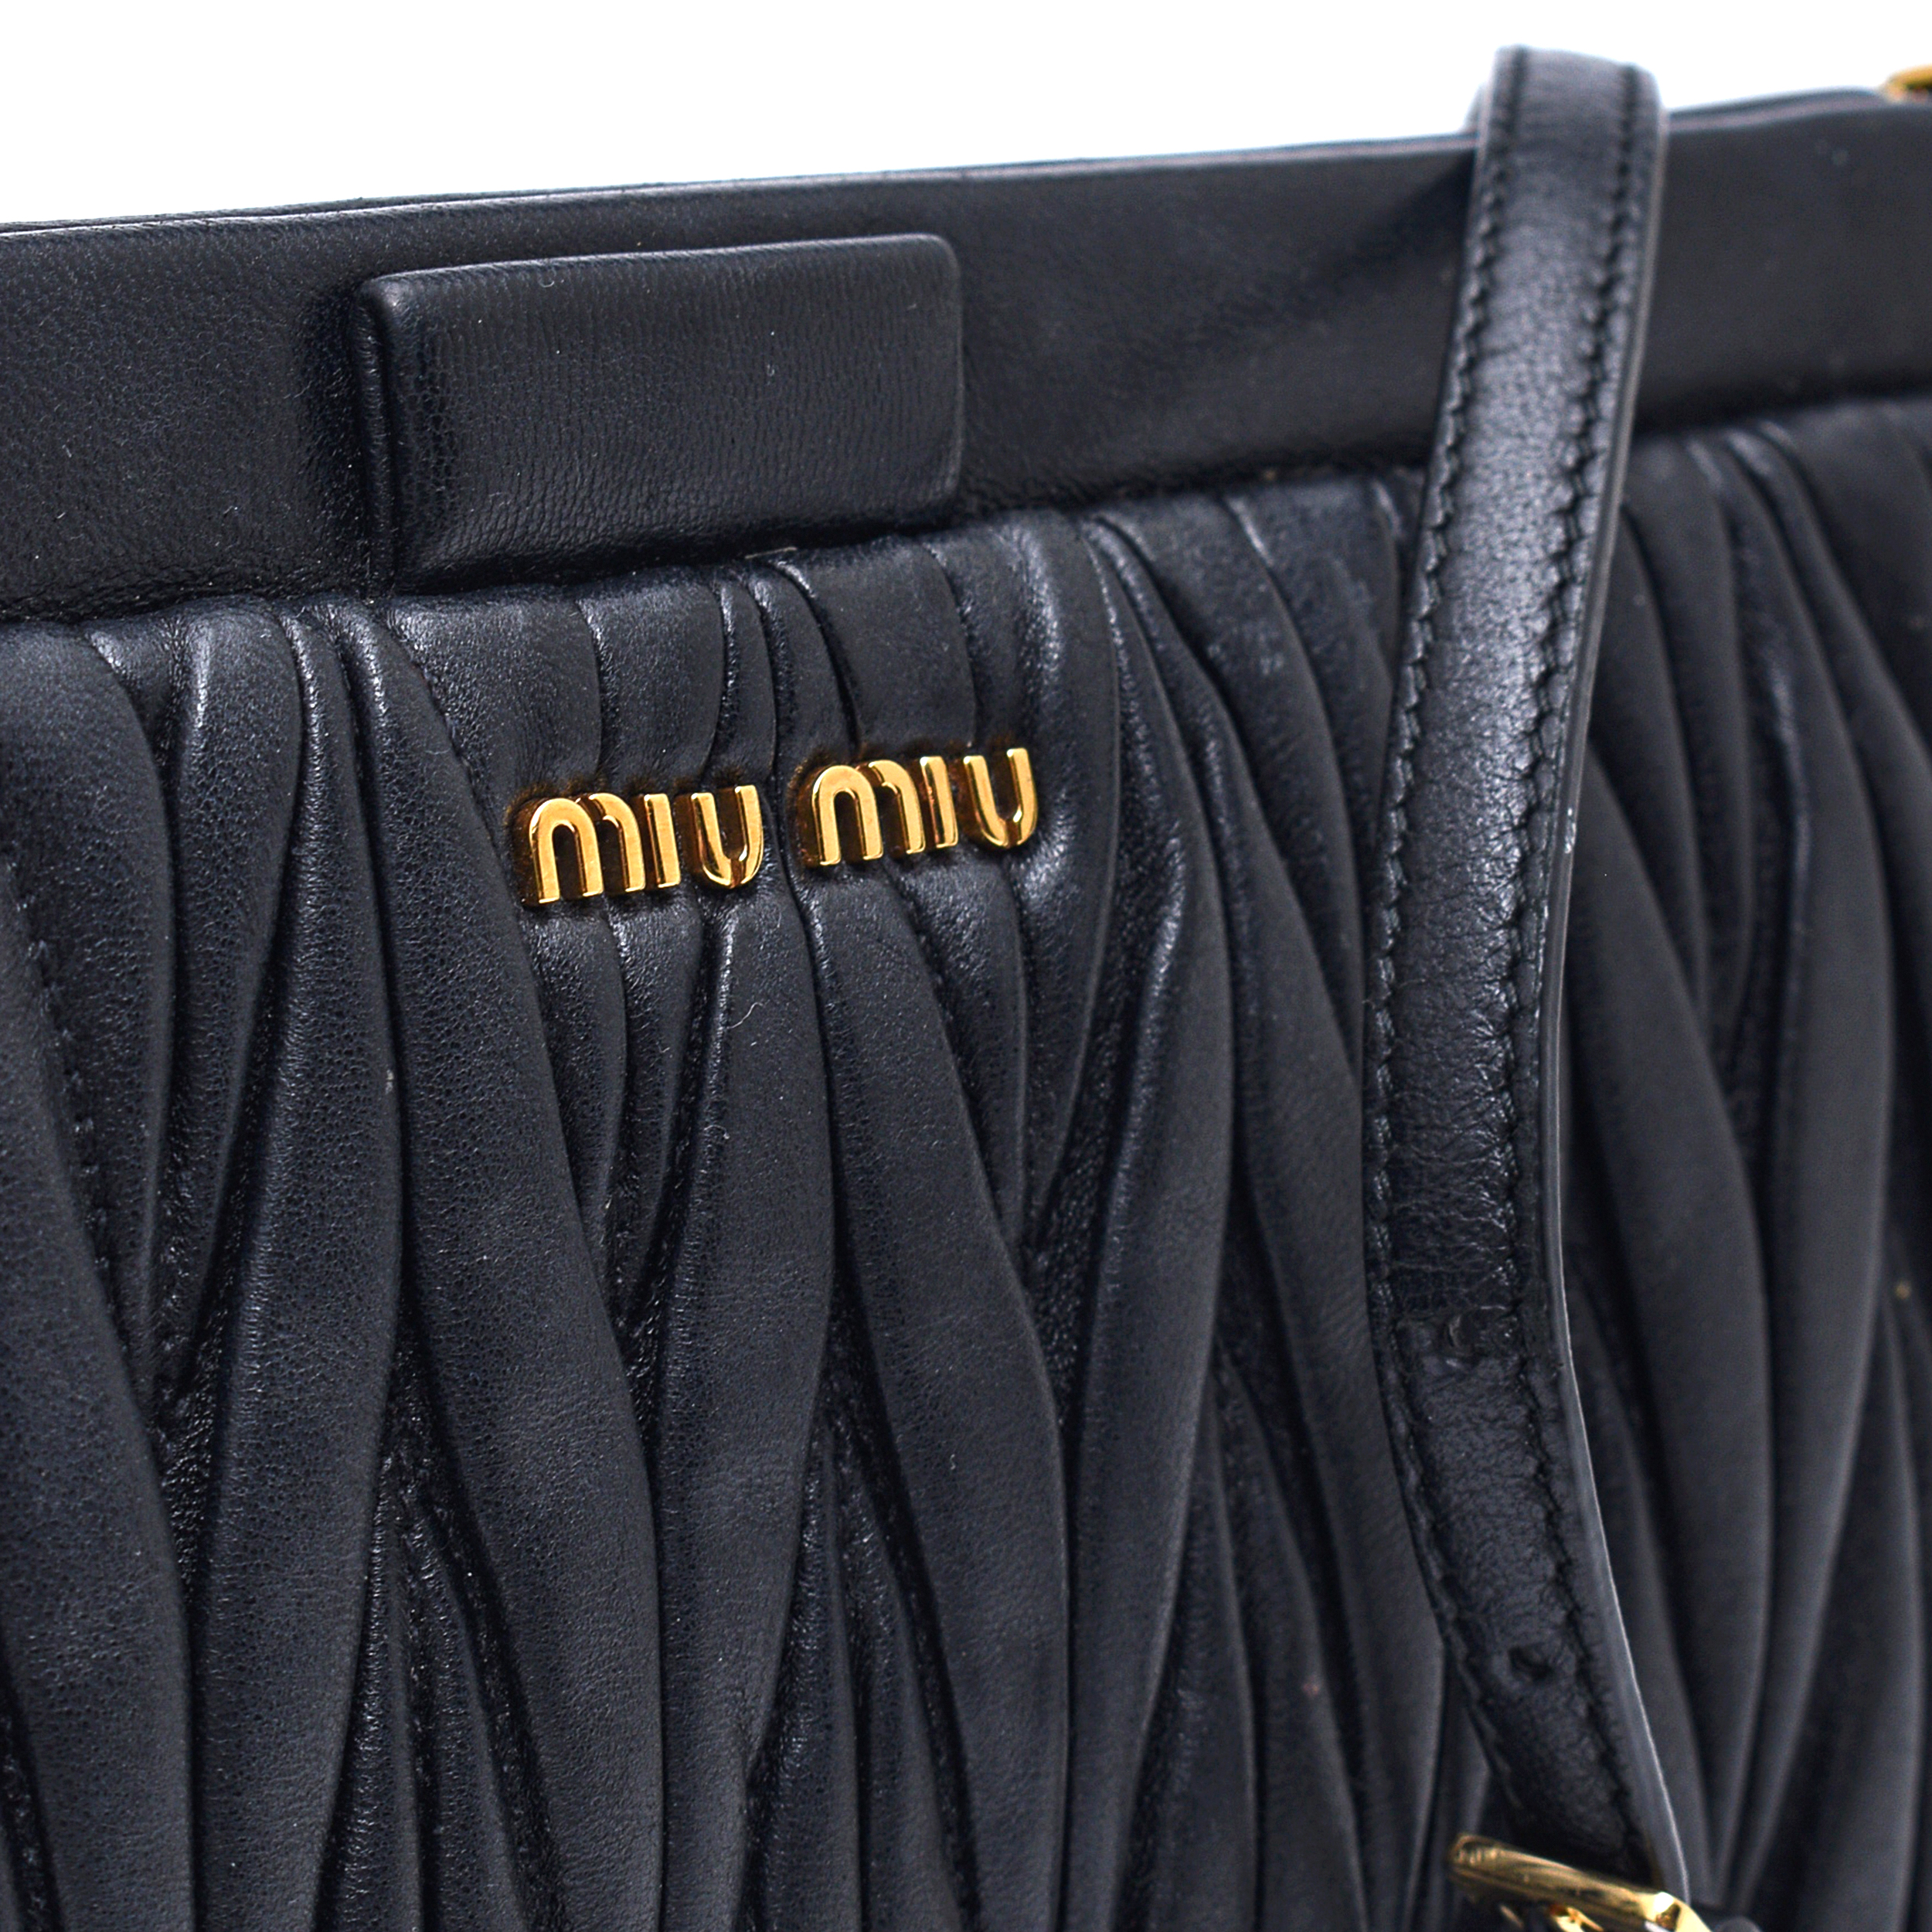 Miu Miu - Black Matelasse Leather Clutch/Crossbody Bag